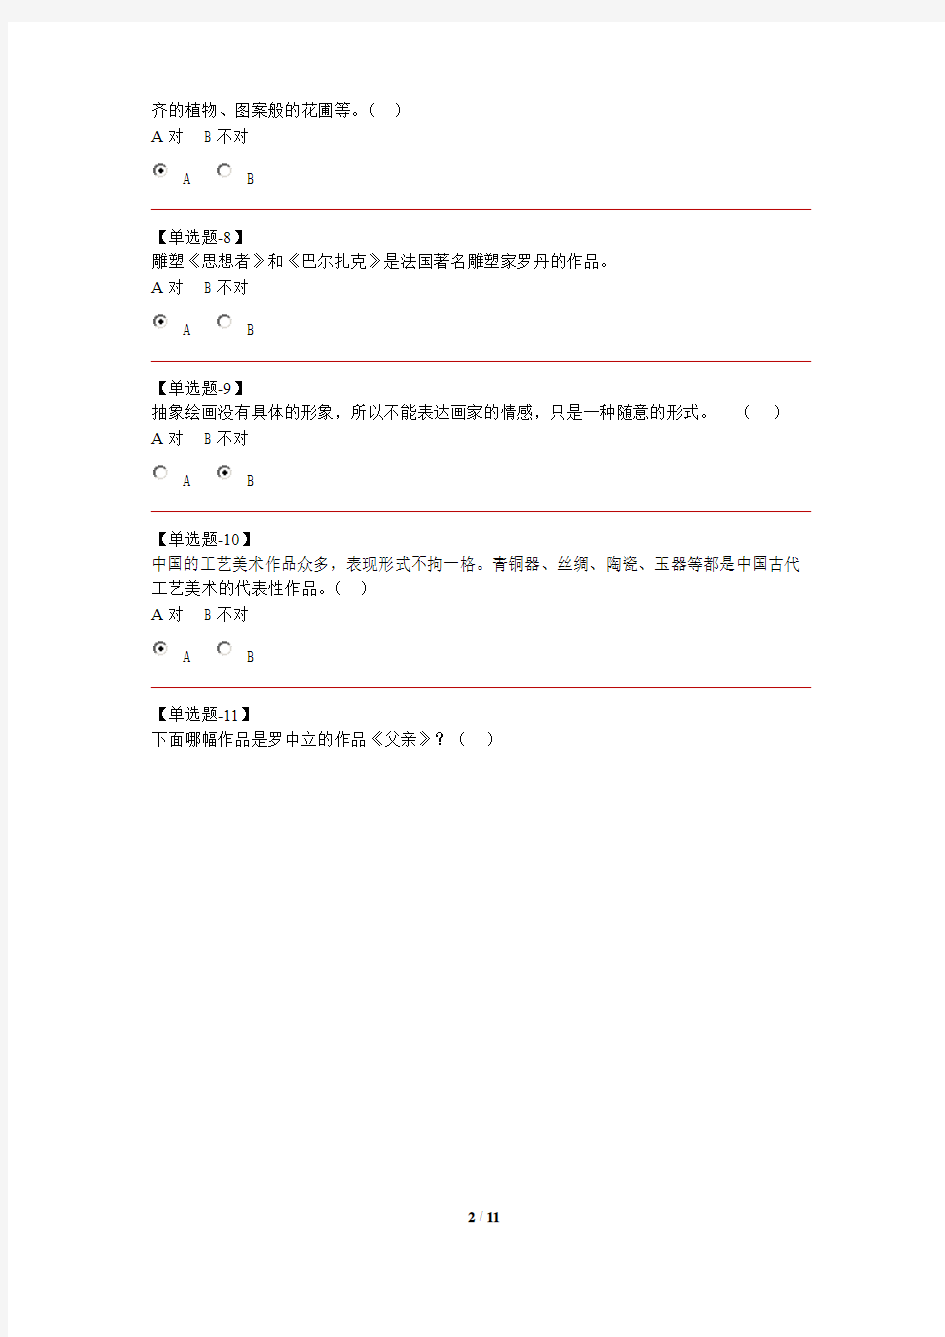 2011河北学业水平测试美术真题(带图版)